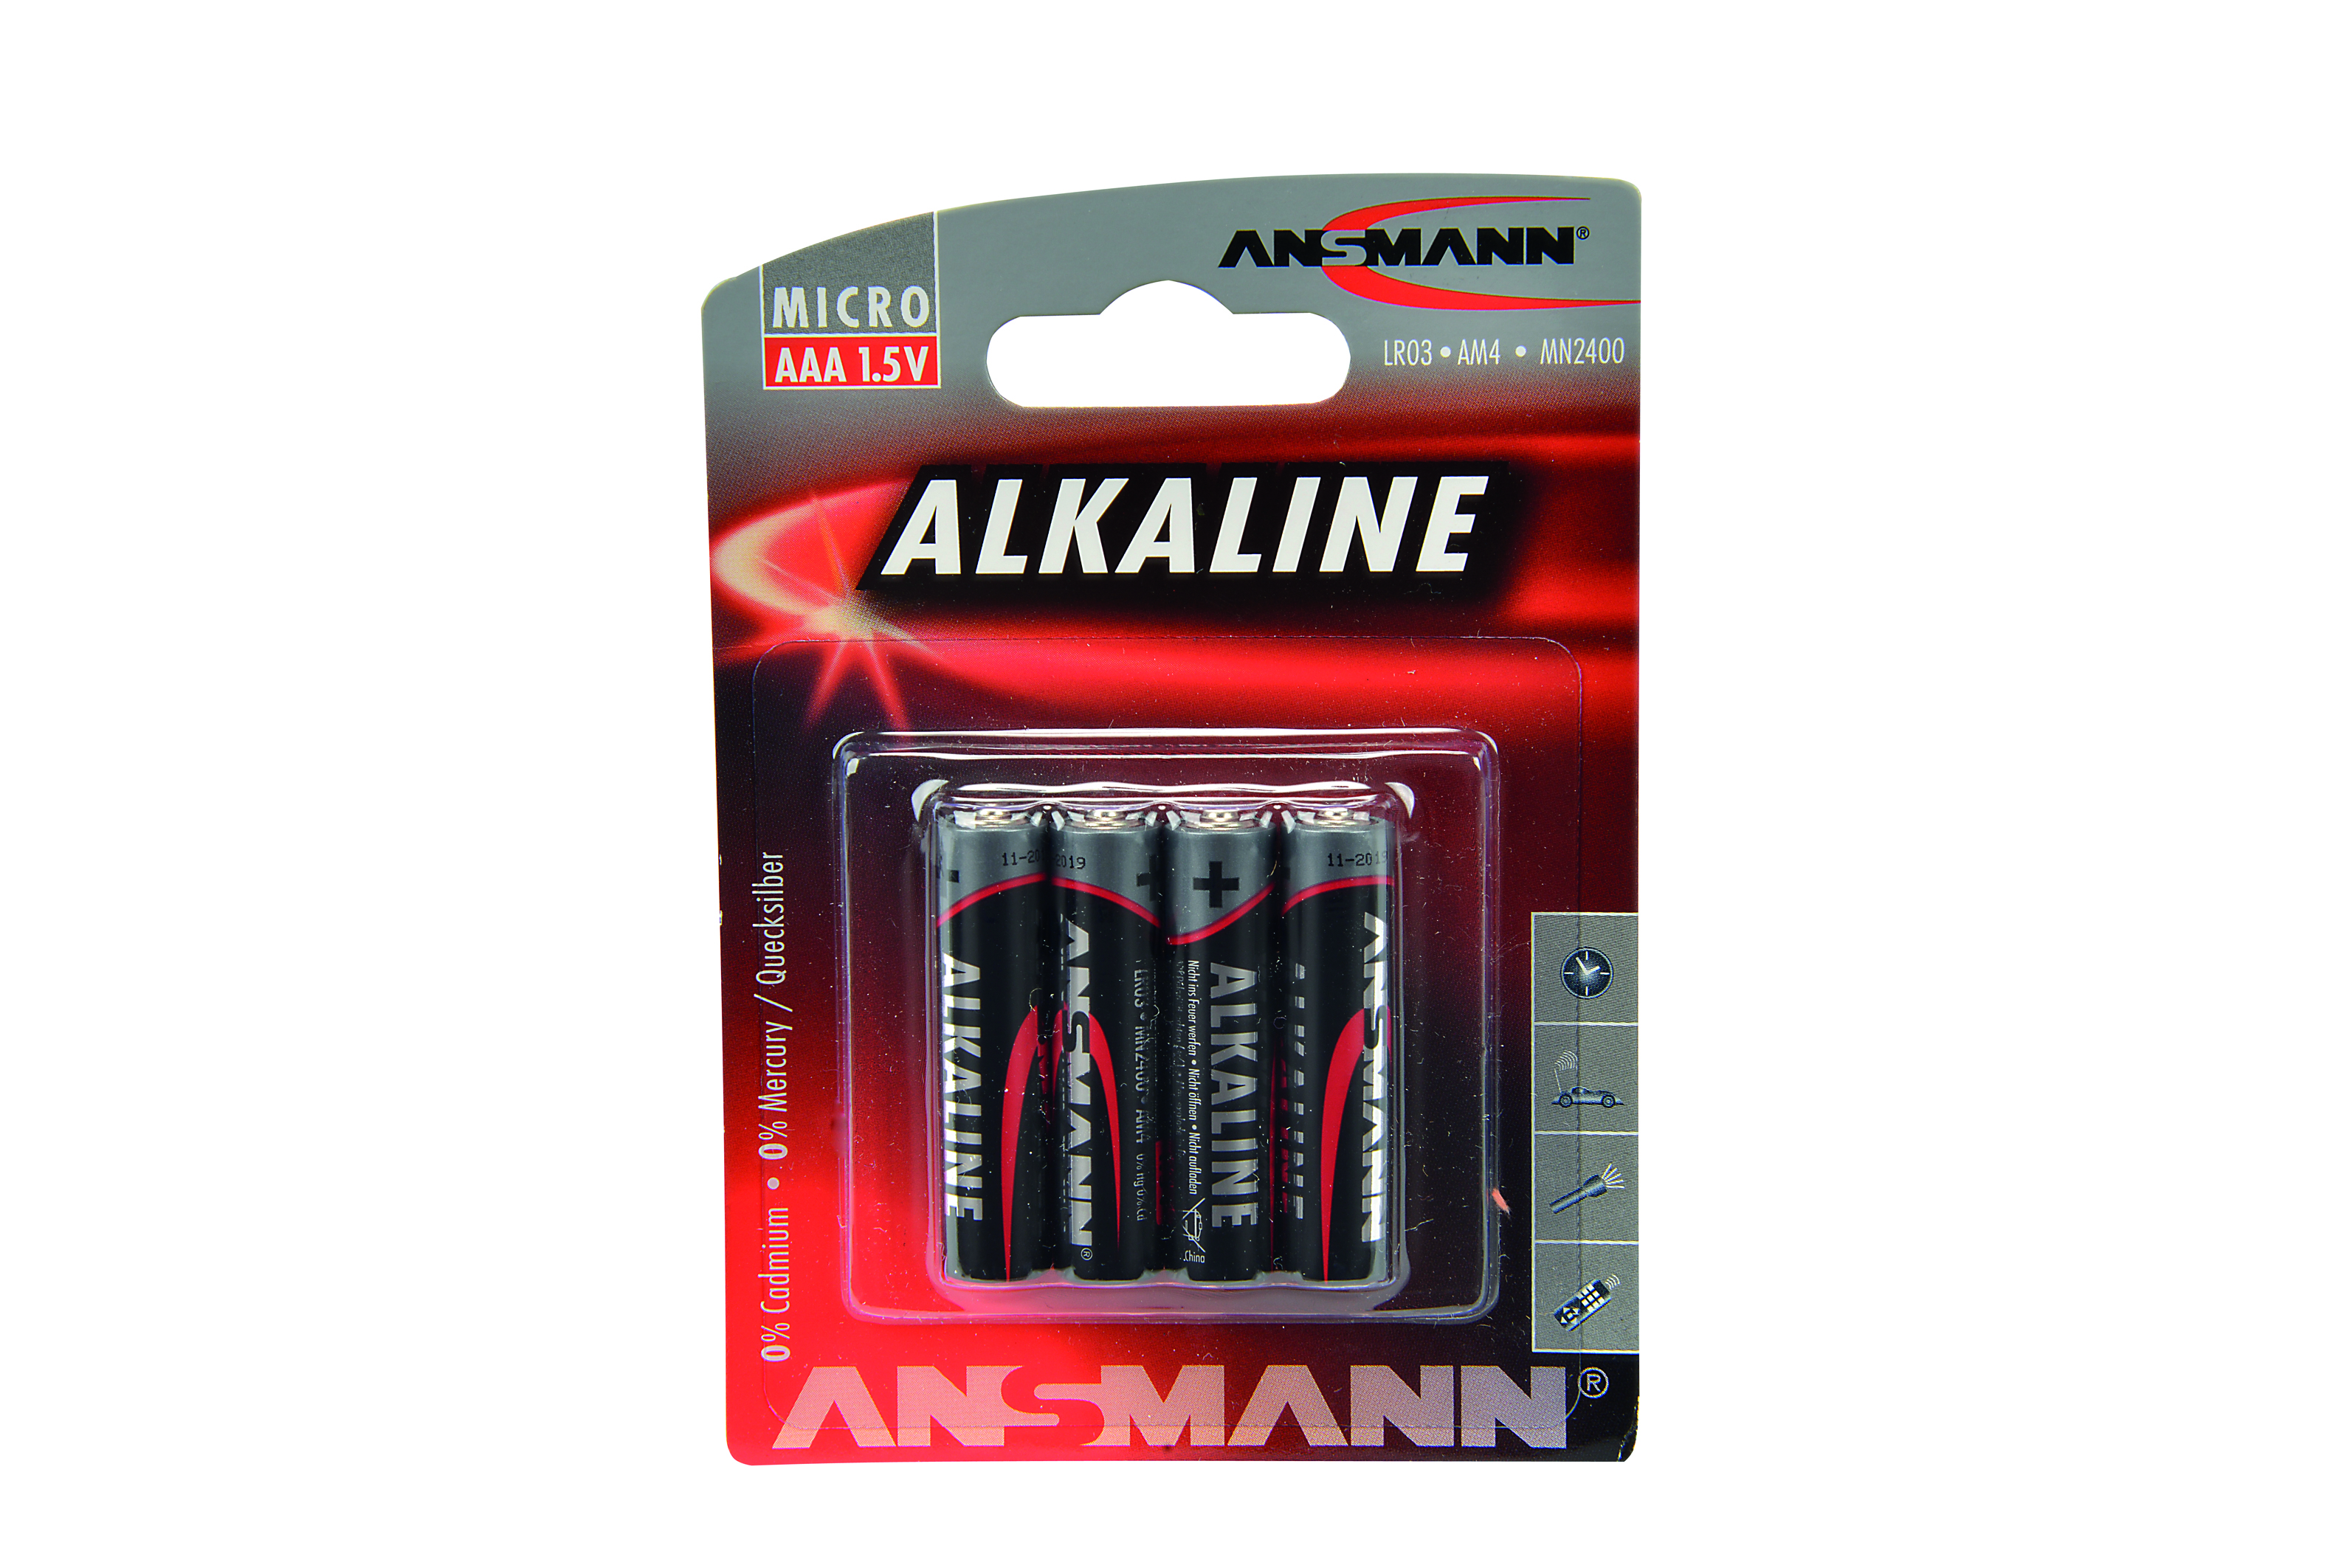 1,5V Alkaline Micro AAA LR03 Batterien (4stk)